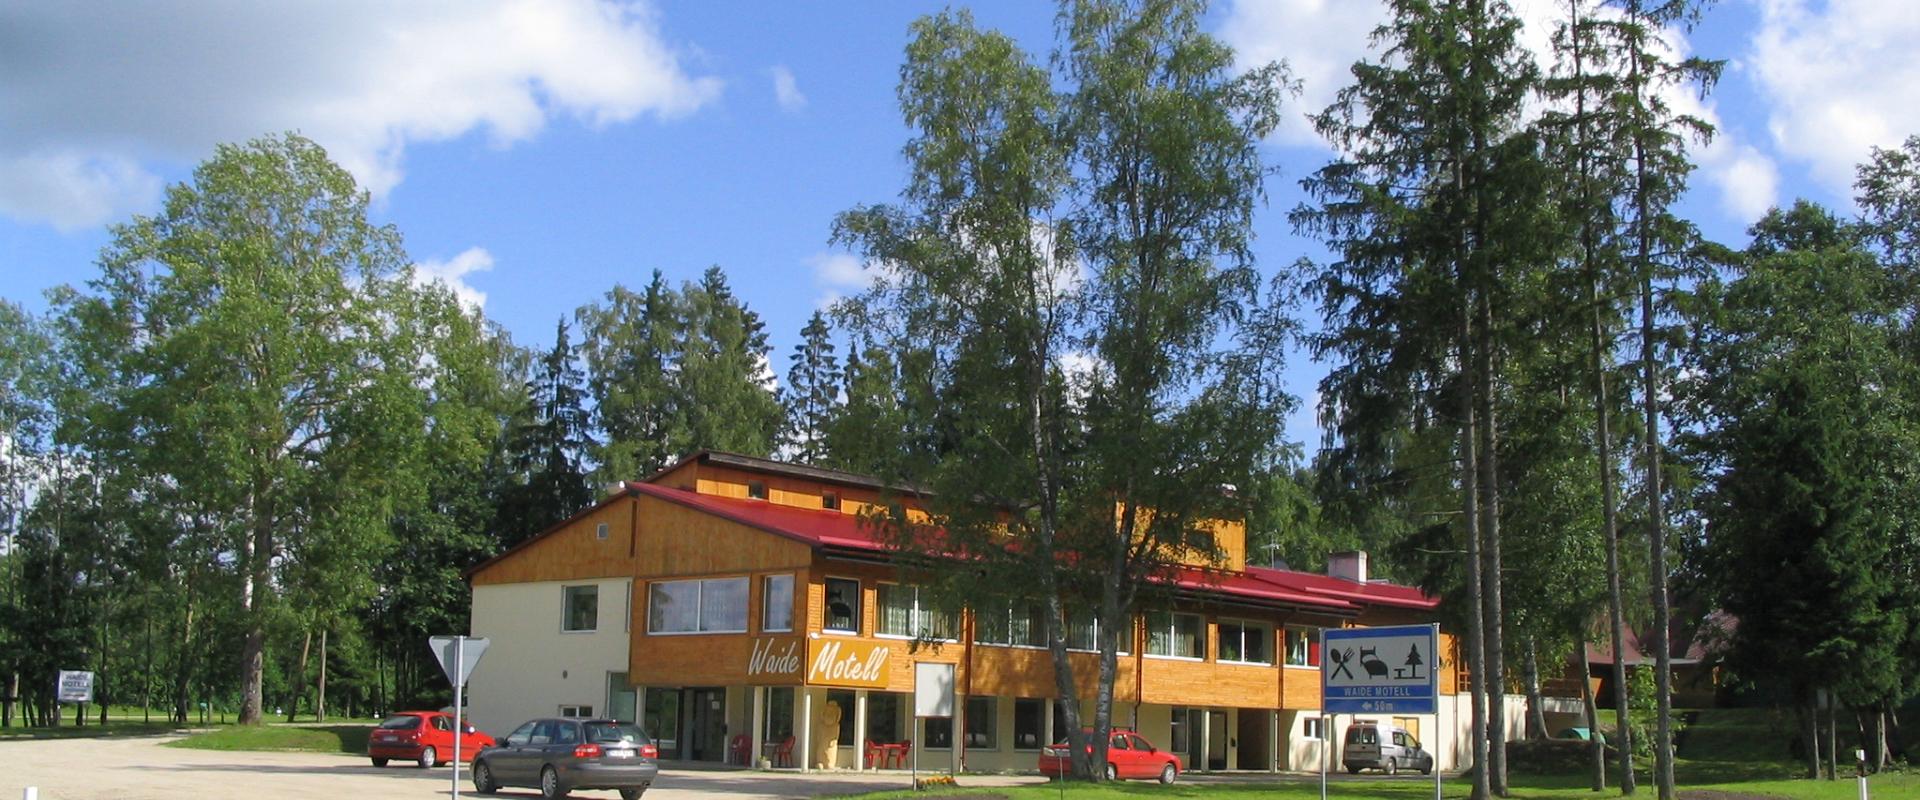 Caravanparkplatz des Waide Motels